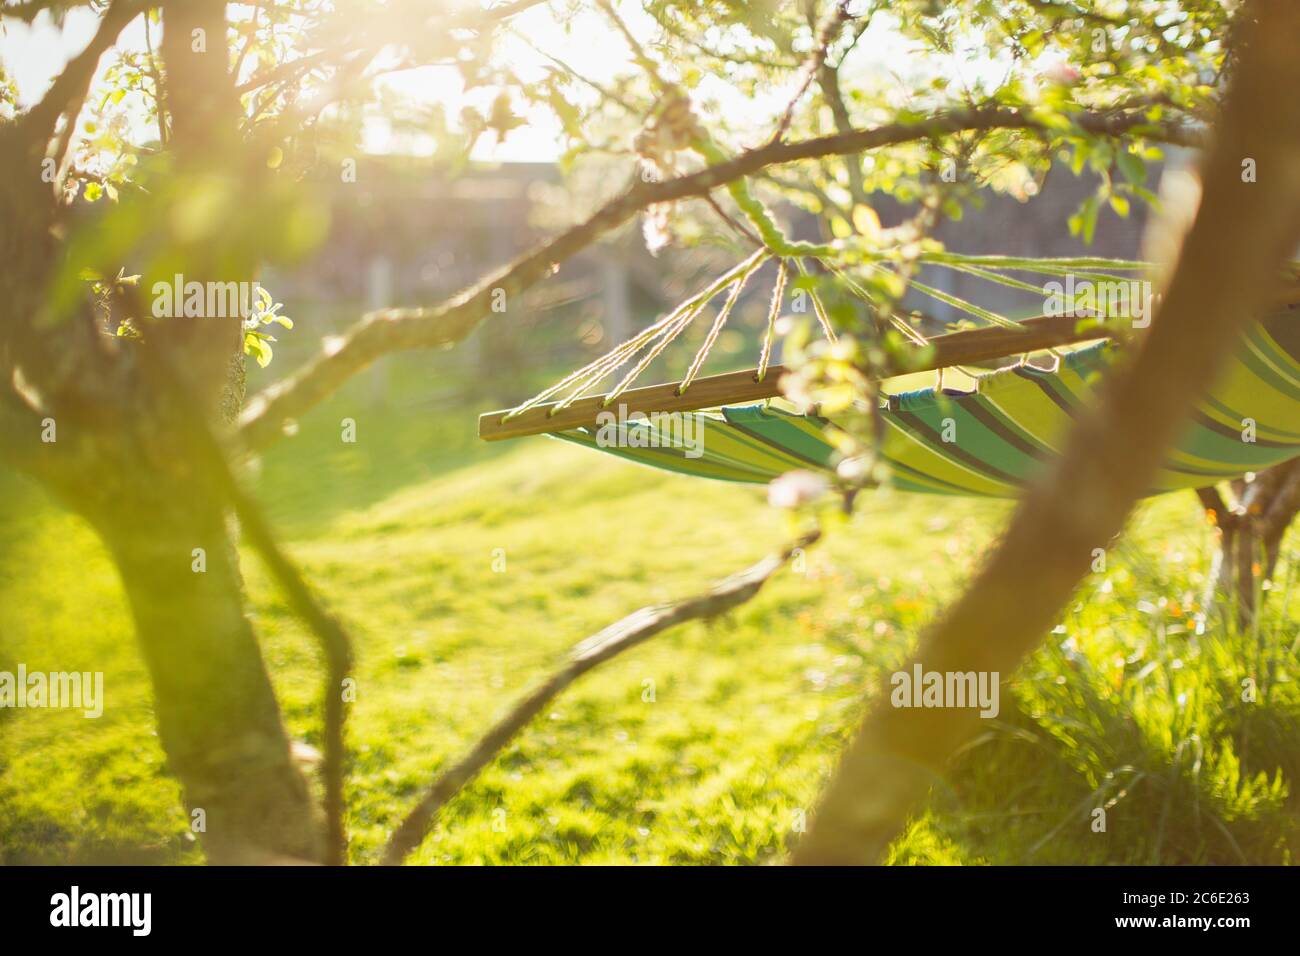 Hängematte in sonnigen ruhigen Garten hängen Stockfoto